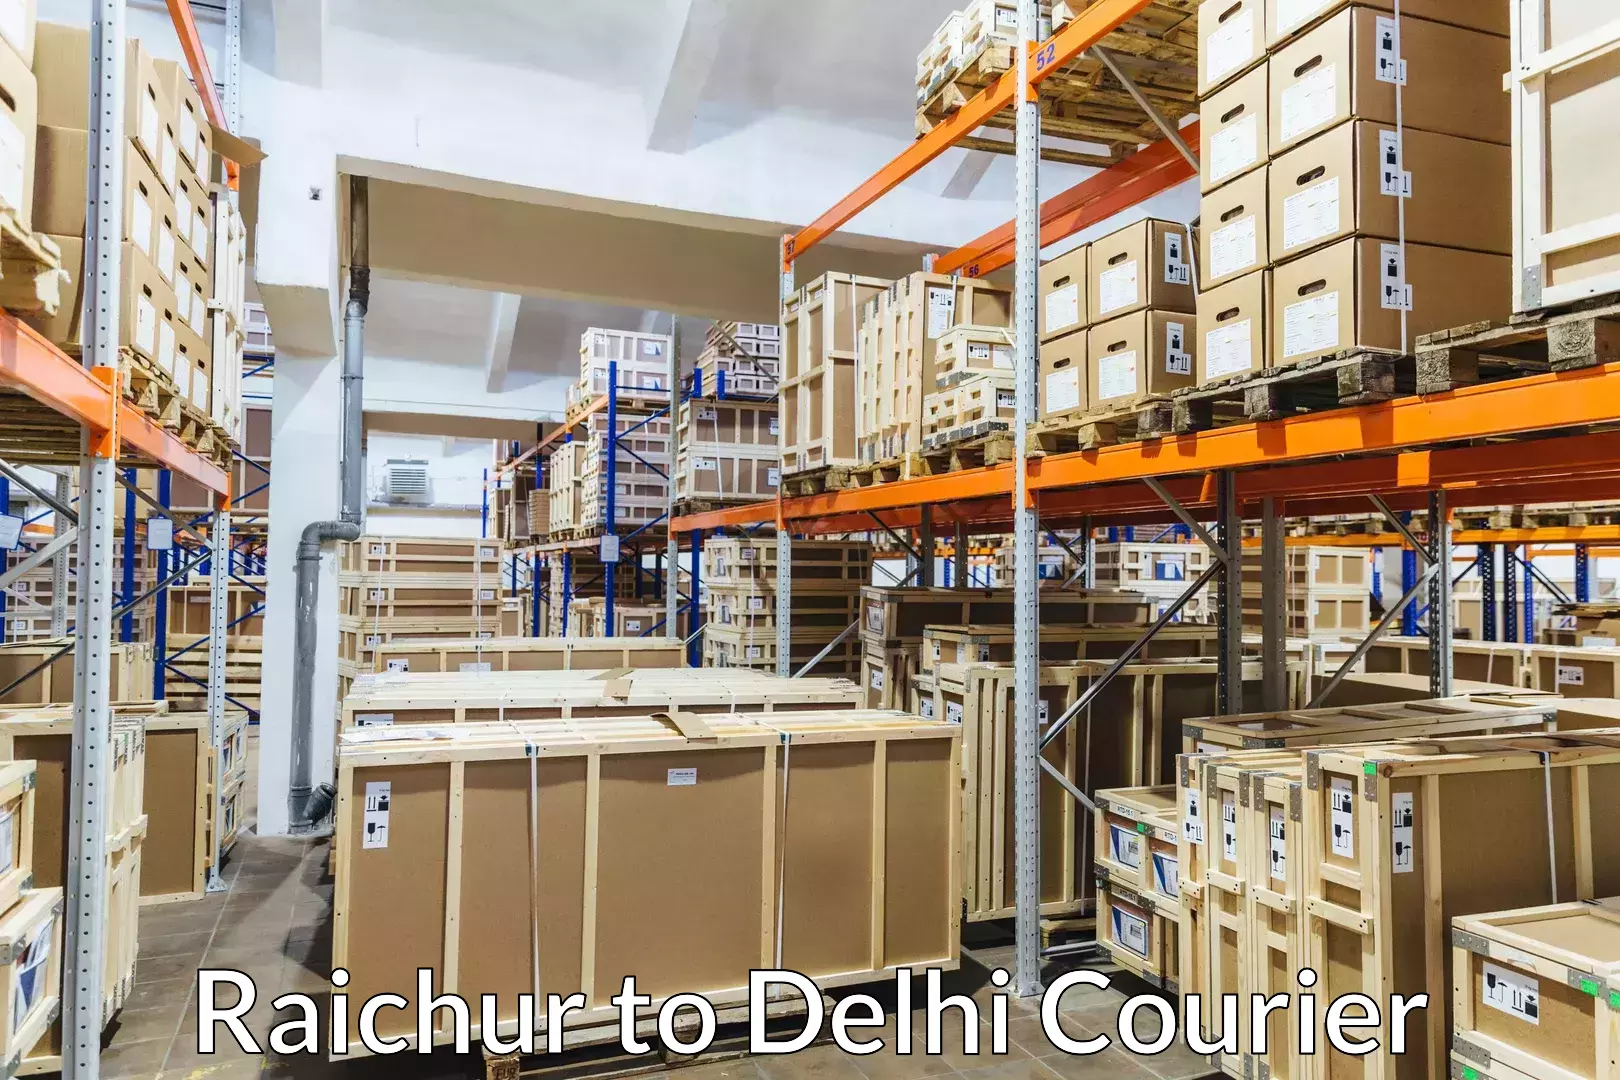 Baggage transport professionals Raichur to IIT Delhi